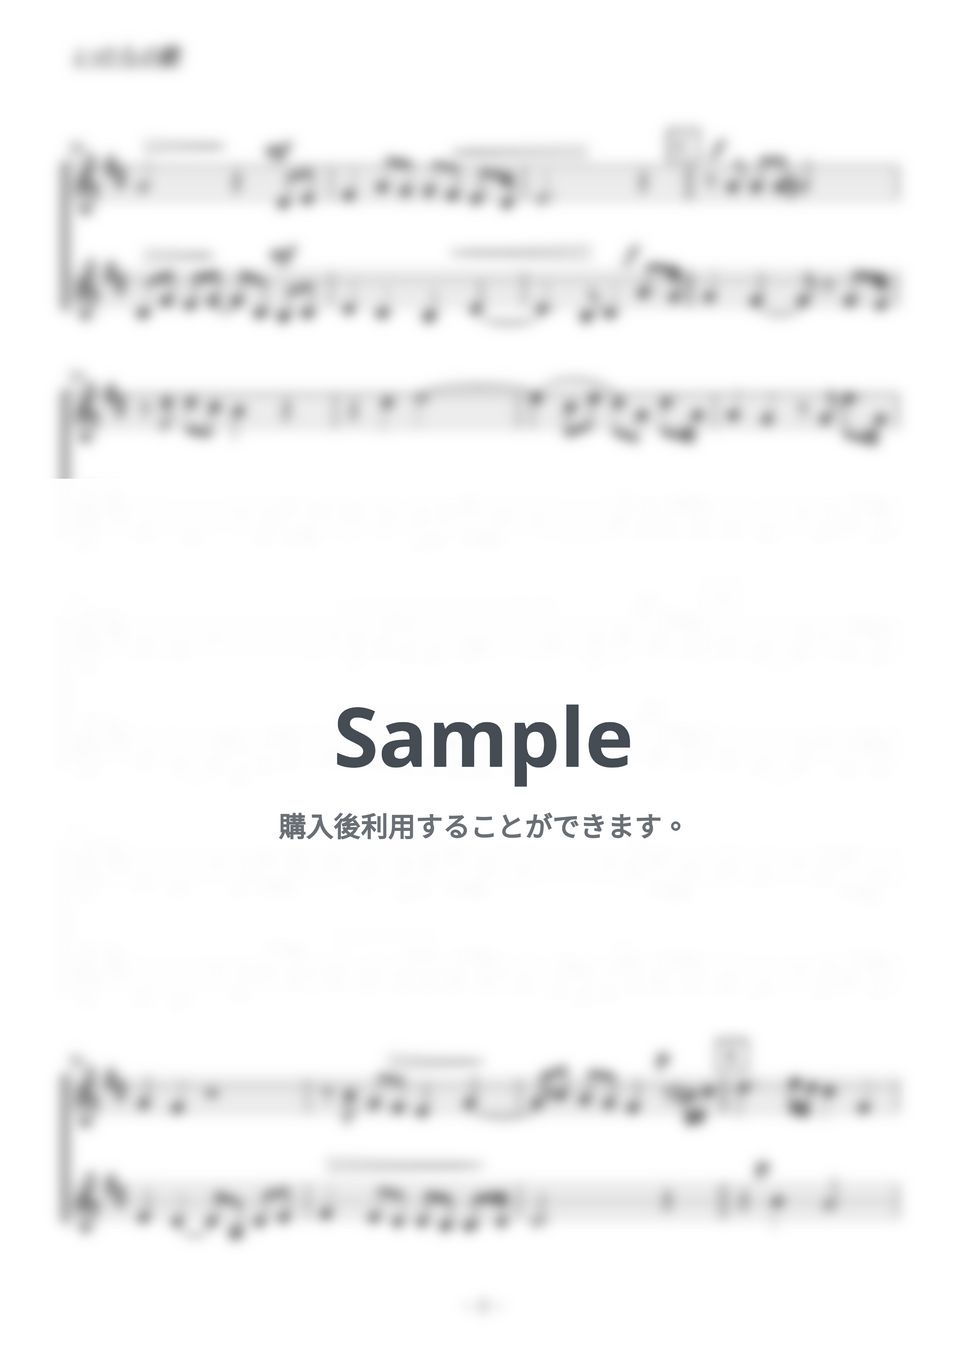 竹内まりや - いのちの歌 (クラリネットorトランペット二重奏／無伴奏) by kiminabe